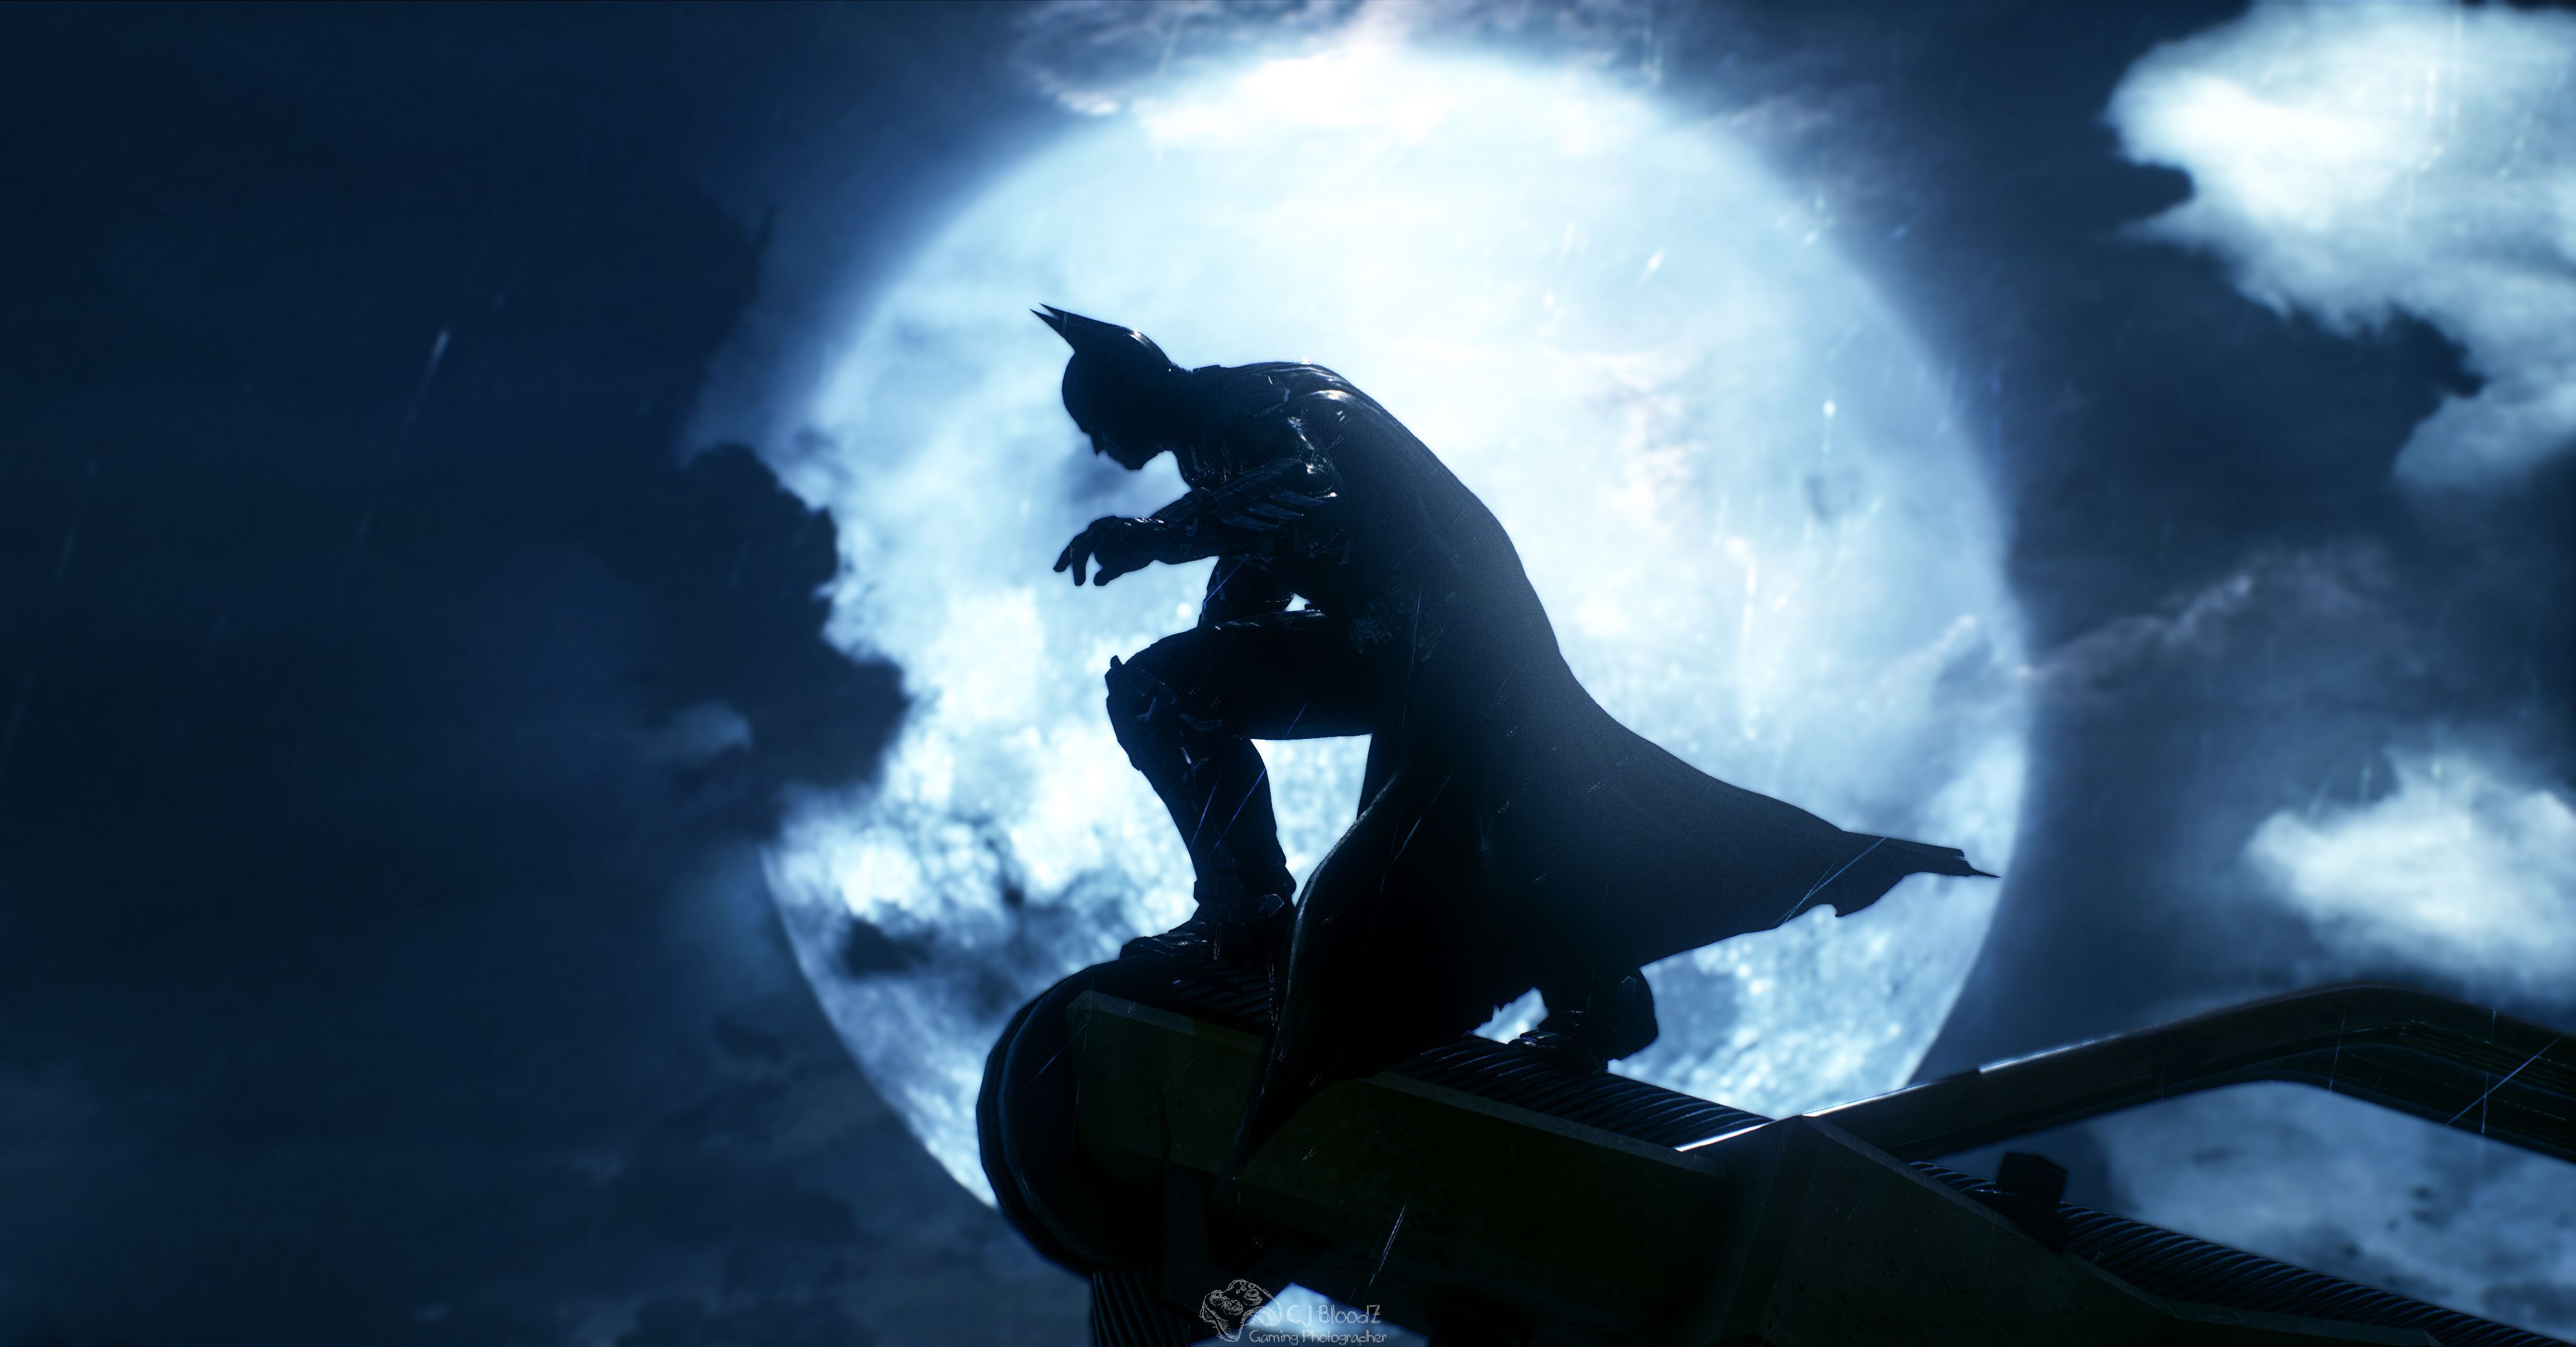  Batman  In Batman  Arkham Knight 4k  HD Games  4k  Wallpapers  